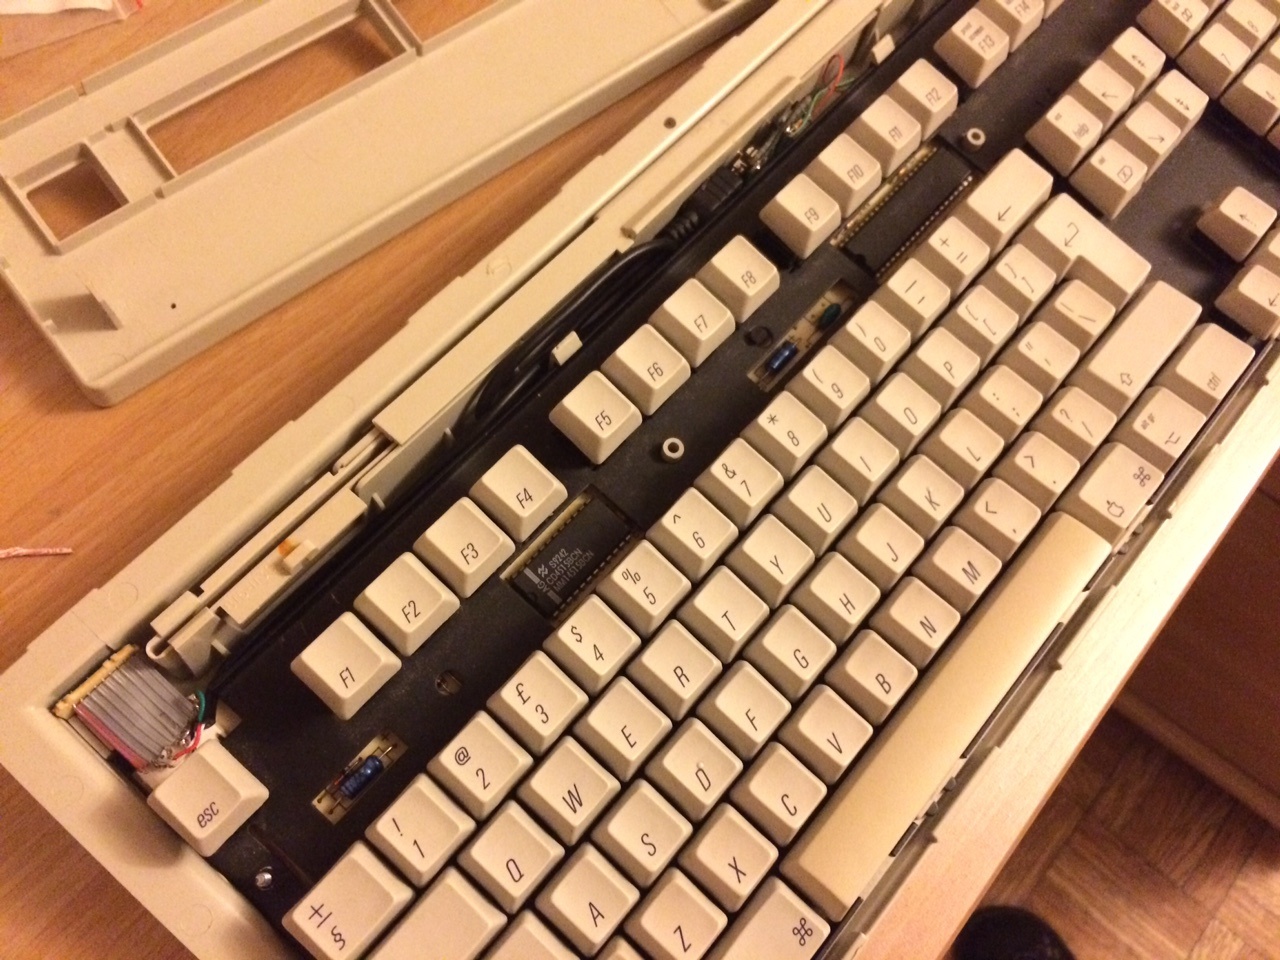 Apple Extended Keyboard II - 5